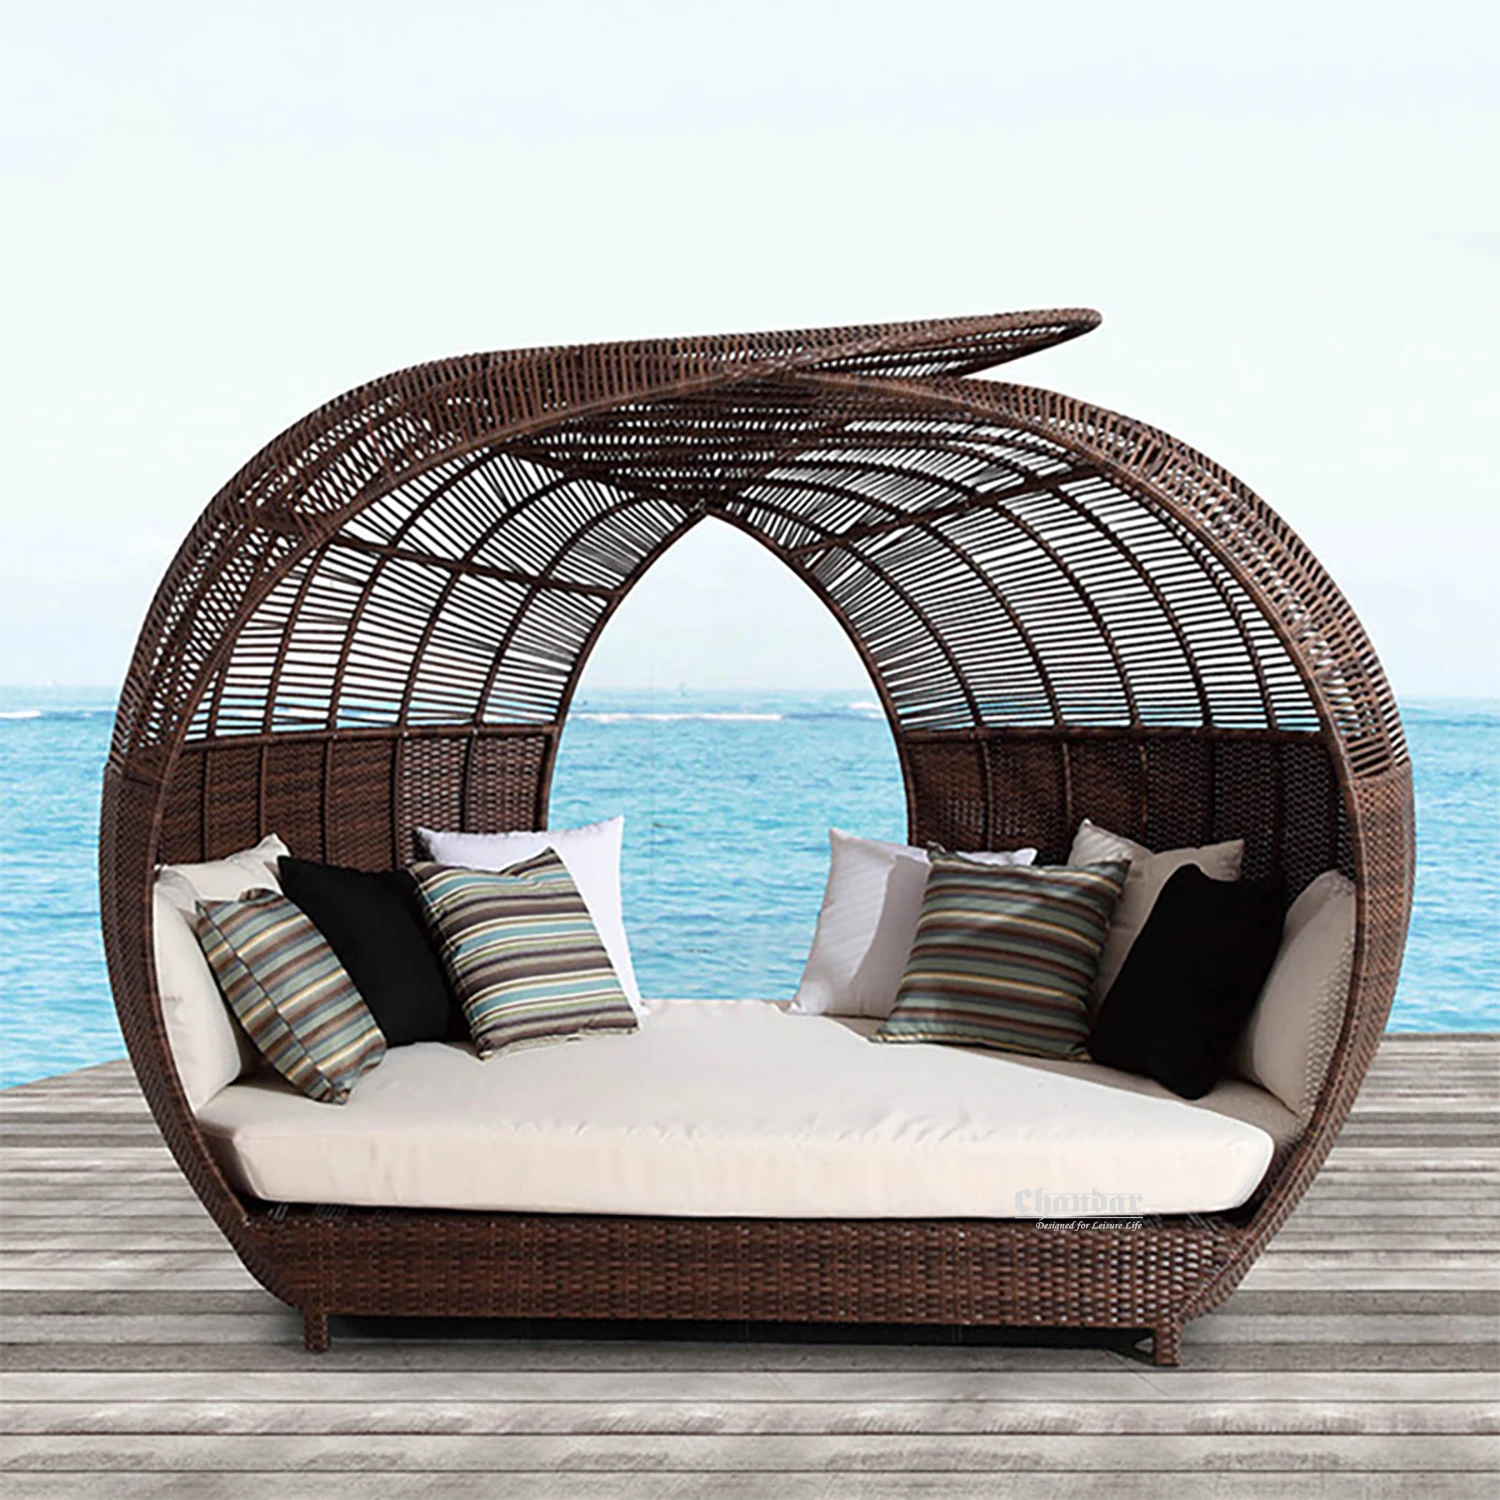 5 star hotel wicker rattan outdoor furniture patio garden bed round